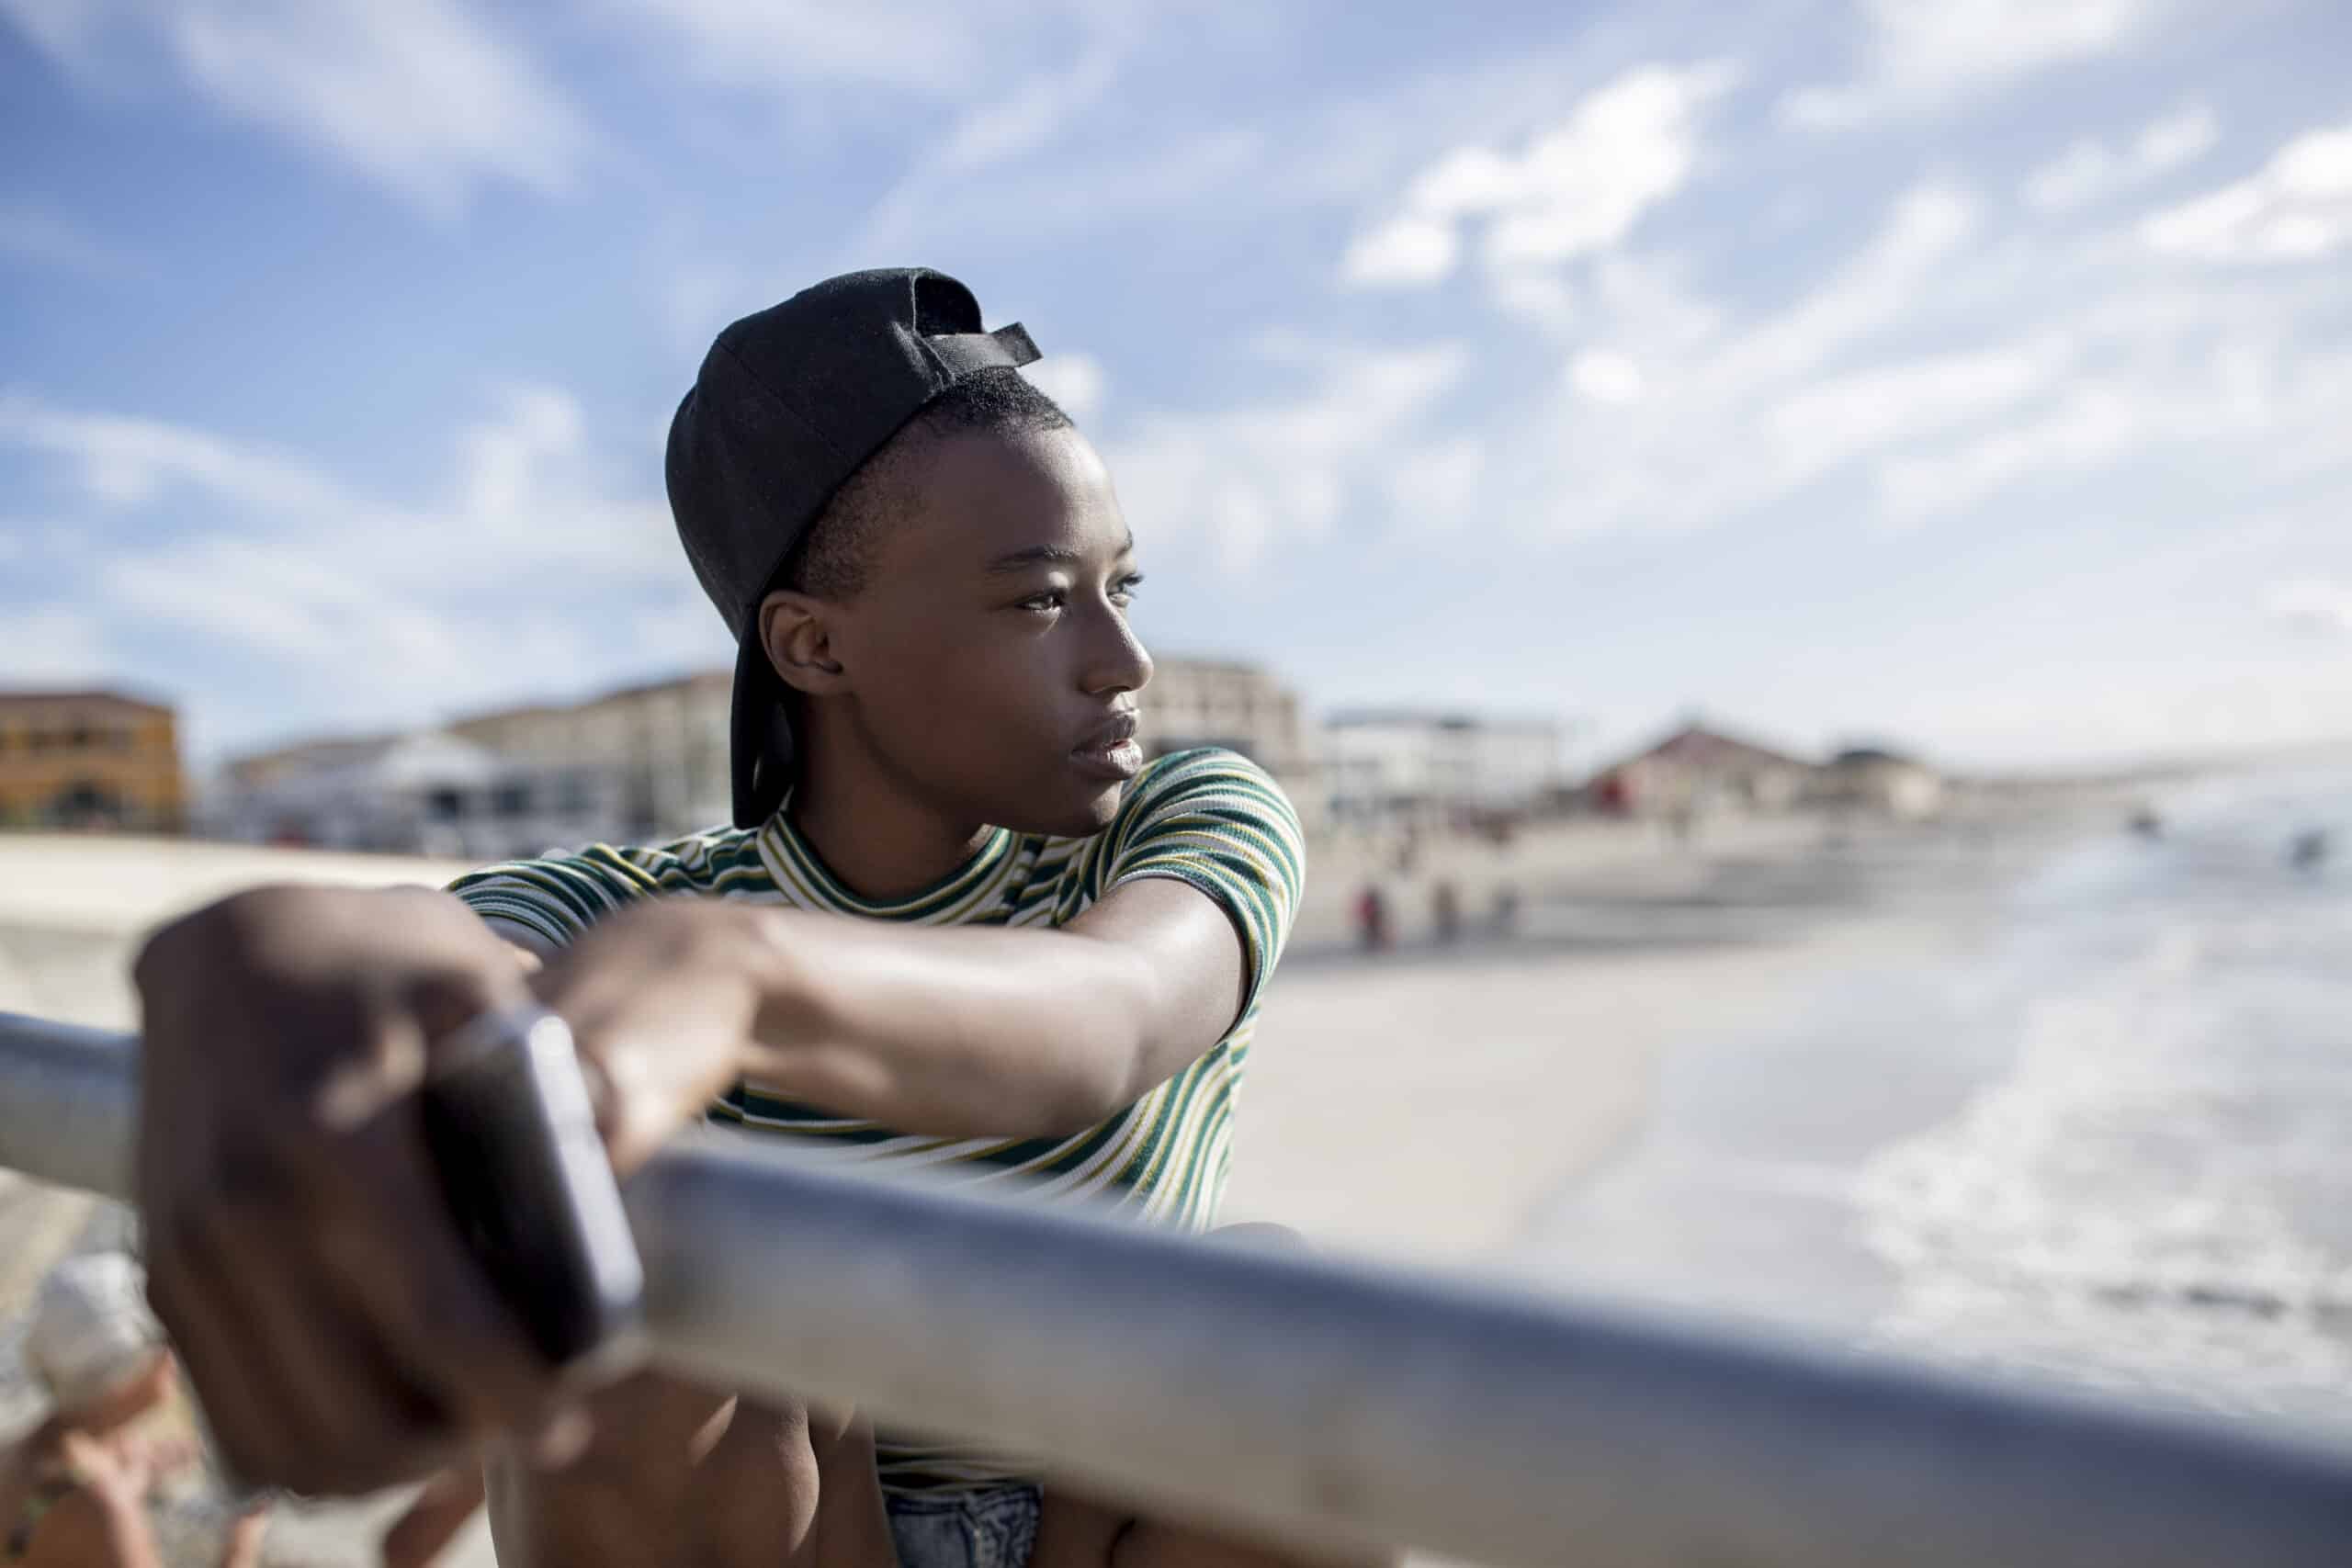 Ein junger Mensch mit verkehrt herum aufgesetzter Kappe lehnt an einem Geländer am Strand und blickt nachdenklich in die Ferne. Im Hintergrund sind Strandbesucher und Gebäude unscharf zu sehen. © Fotografie Tomas Rodriguez